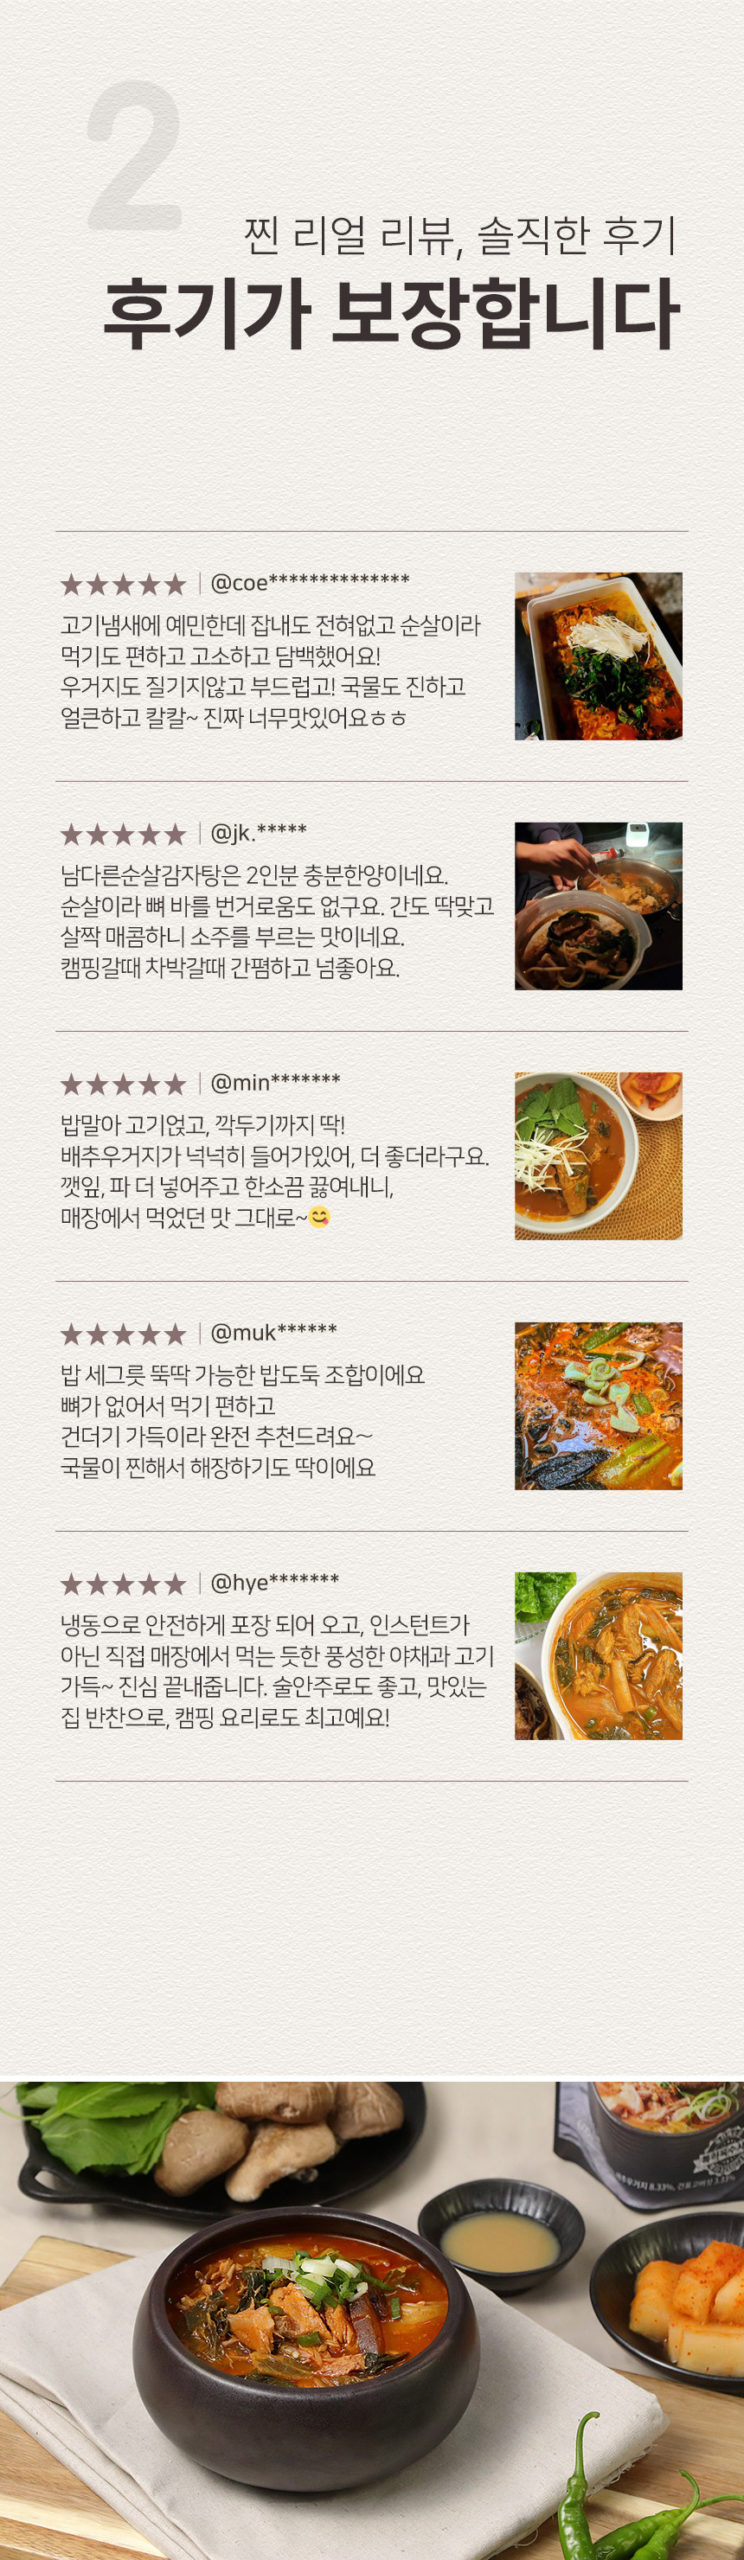 韓國食品-[남다른] 순살 감자탕 600g